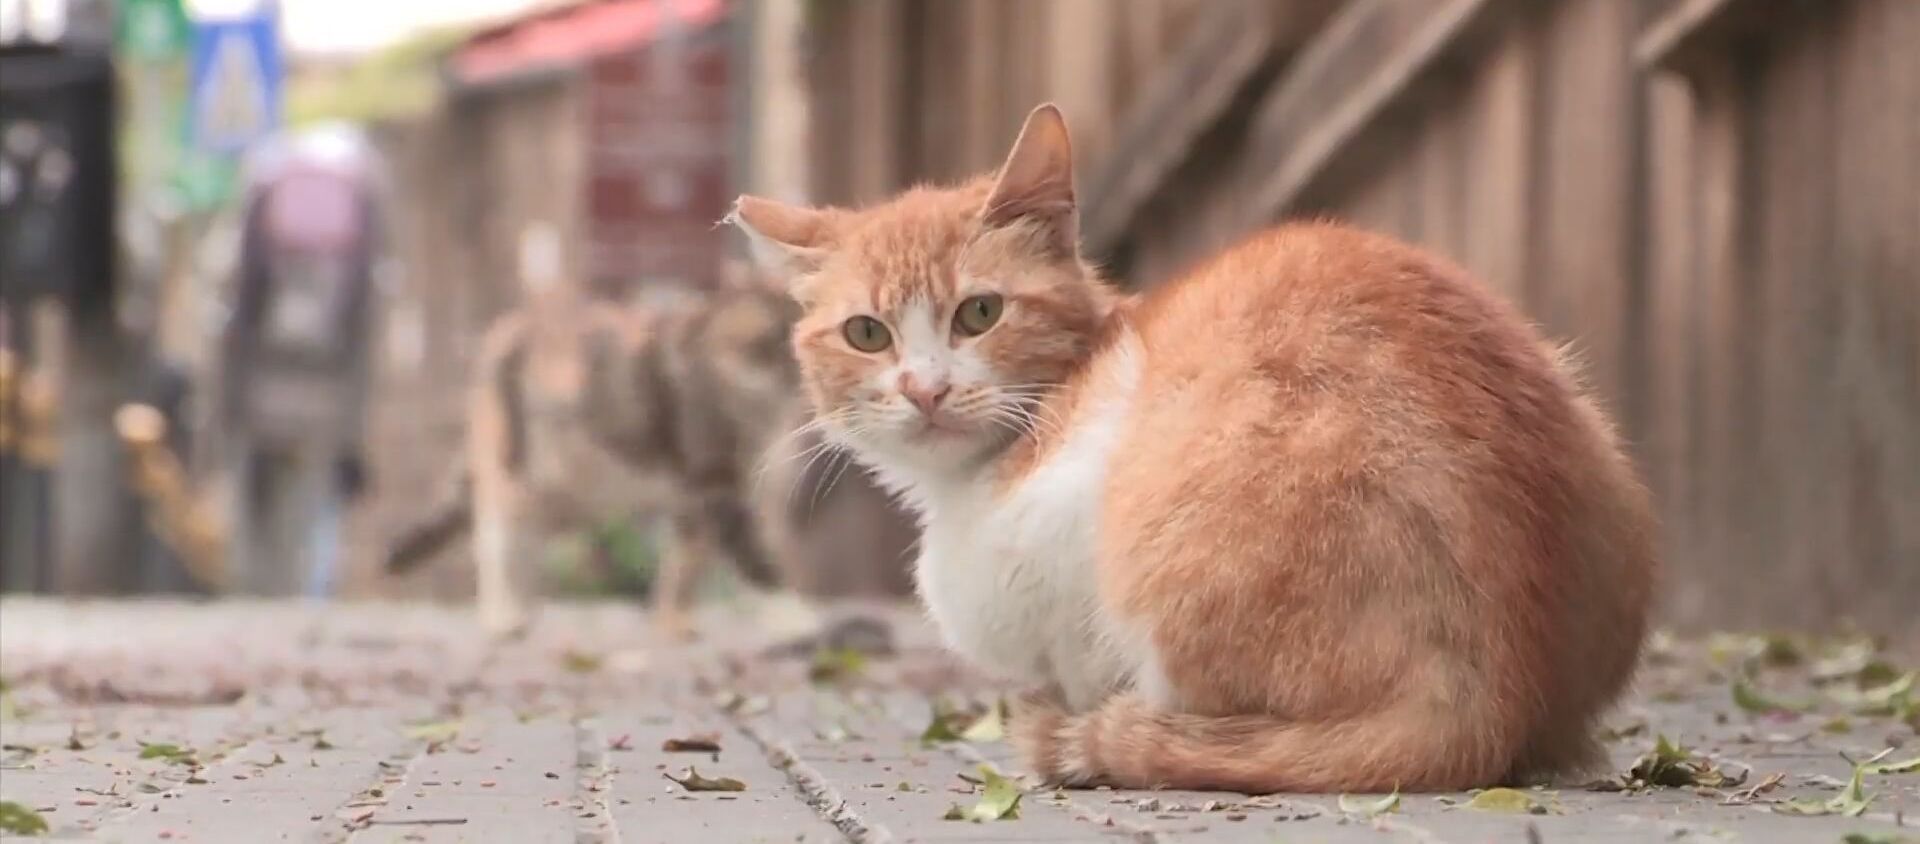 Правда или миф: переносят ли коты коронавирус? - Sputnik Молдова, 1920, 05.04.2020